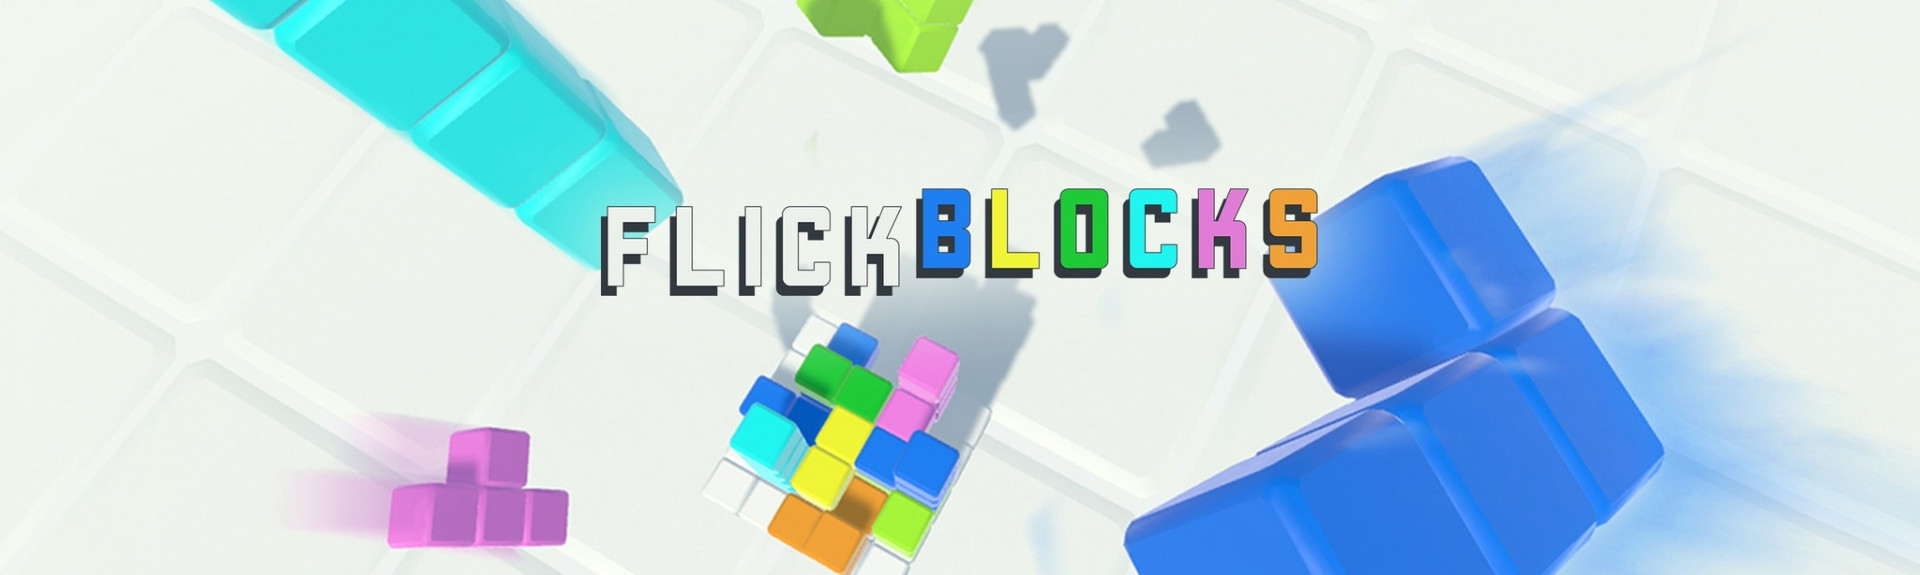 Flickblocks